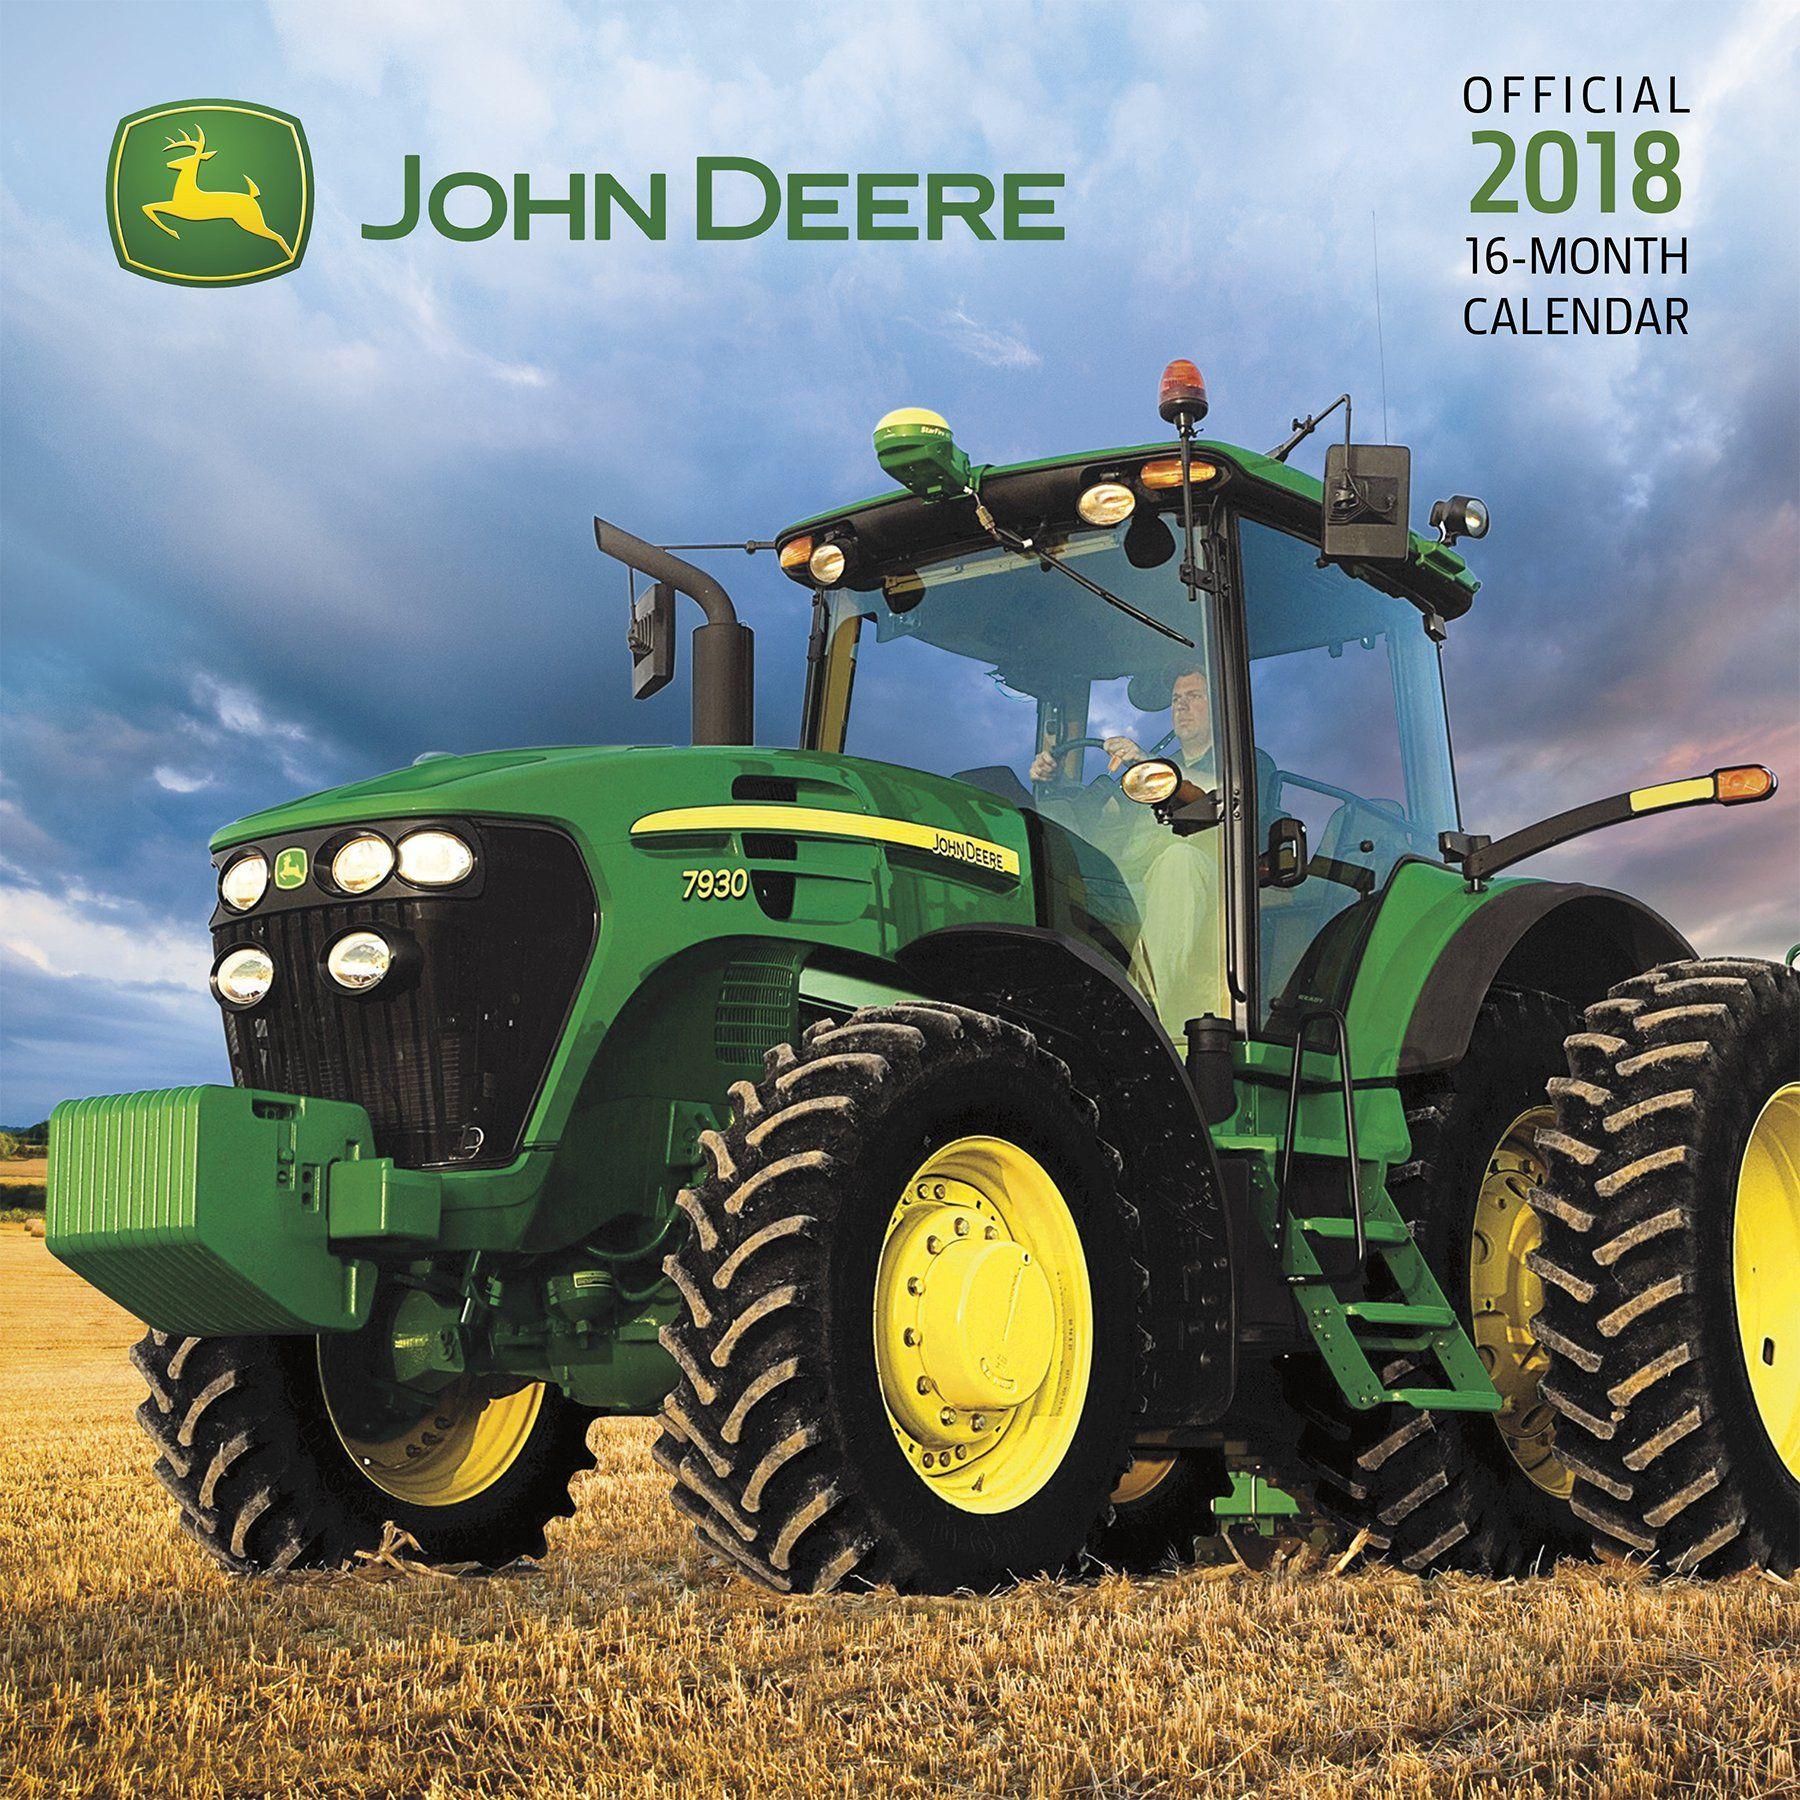 2018 John Deere Logo - Buy John Deere 2018 Calendar Book Online at Low Prices in India ...